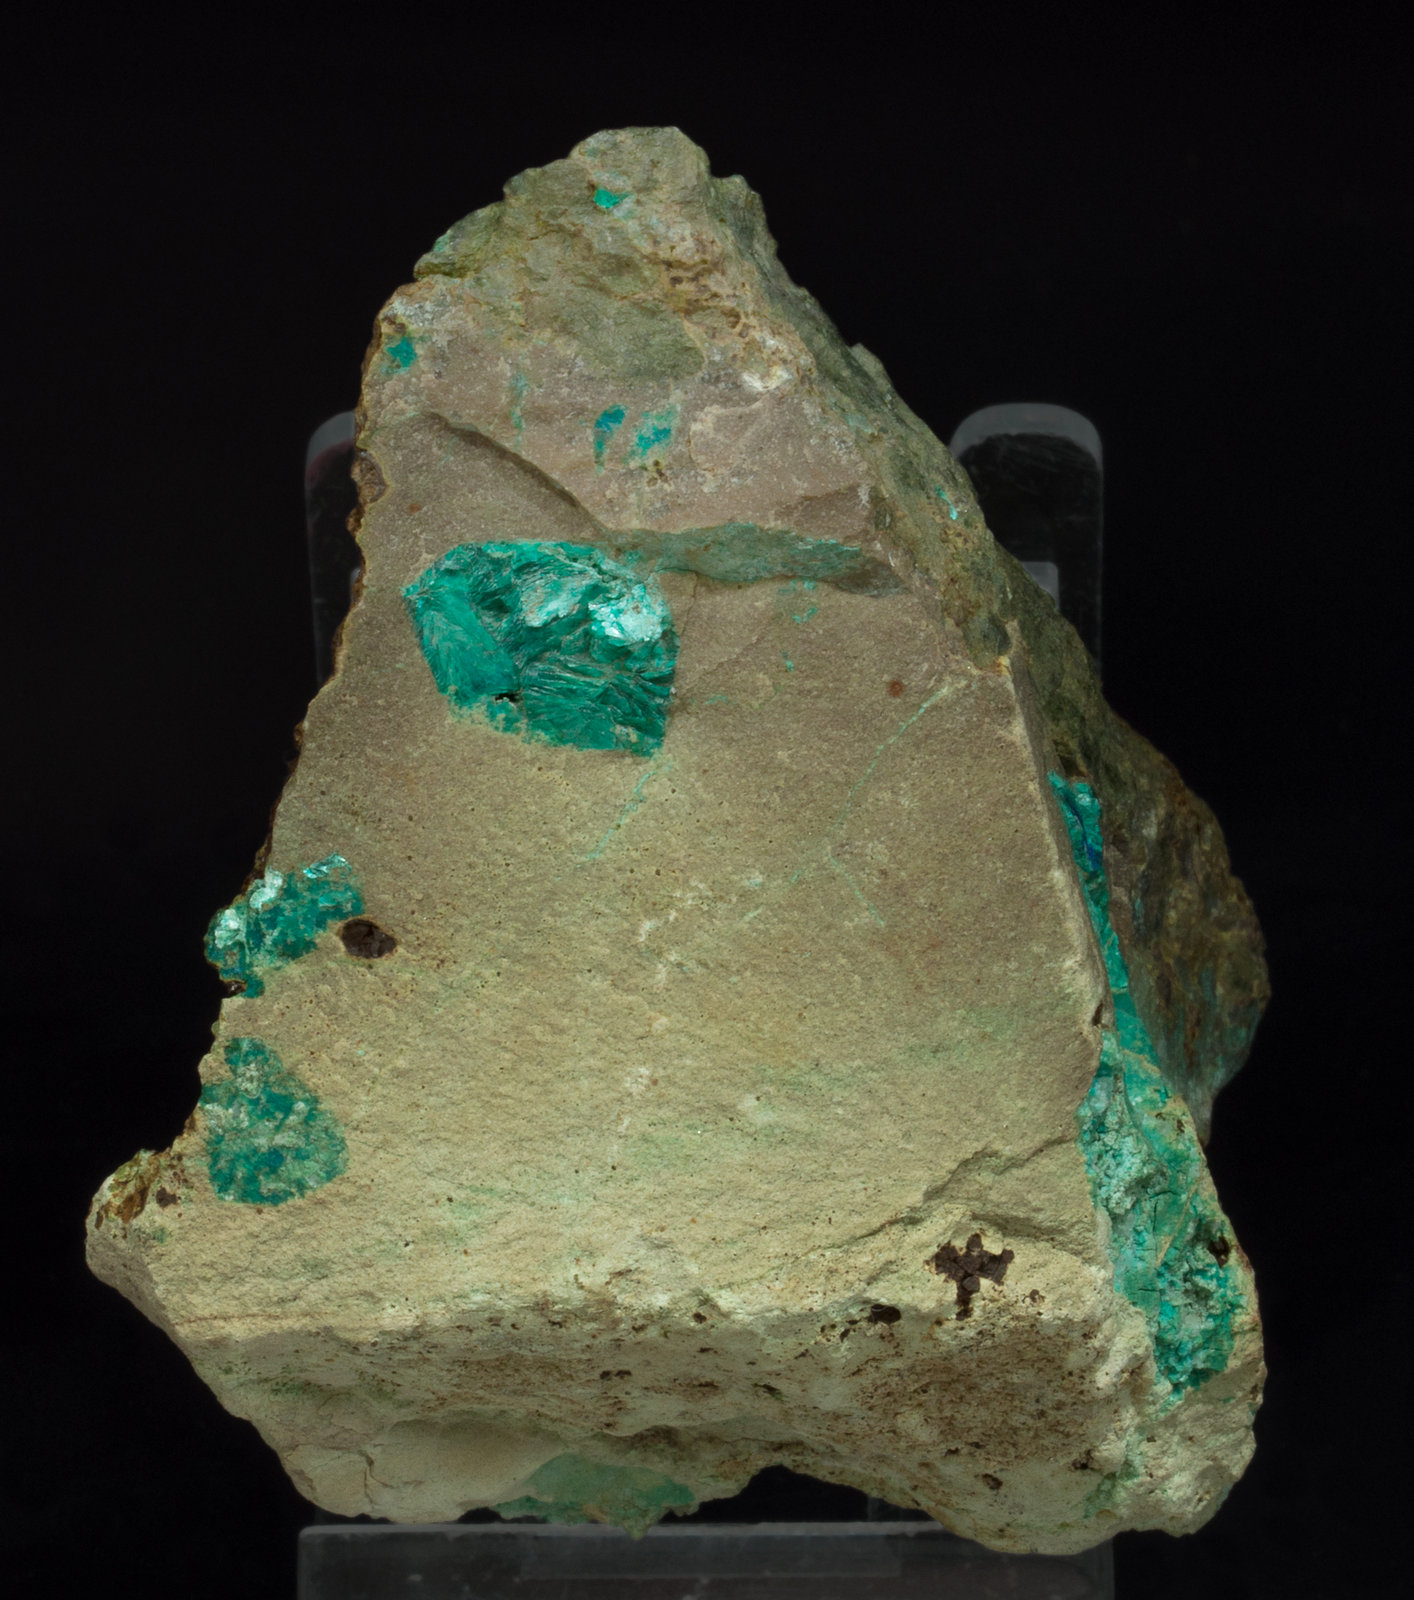 specimens/s_imagesY9/Tyrolite-RB14Y9f.jpg